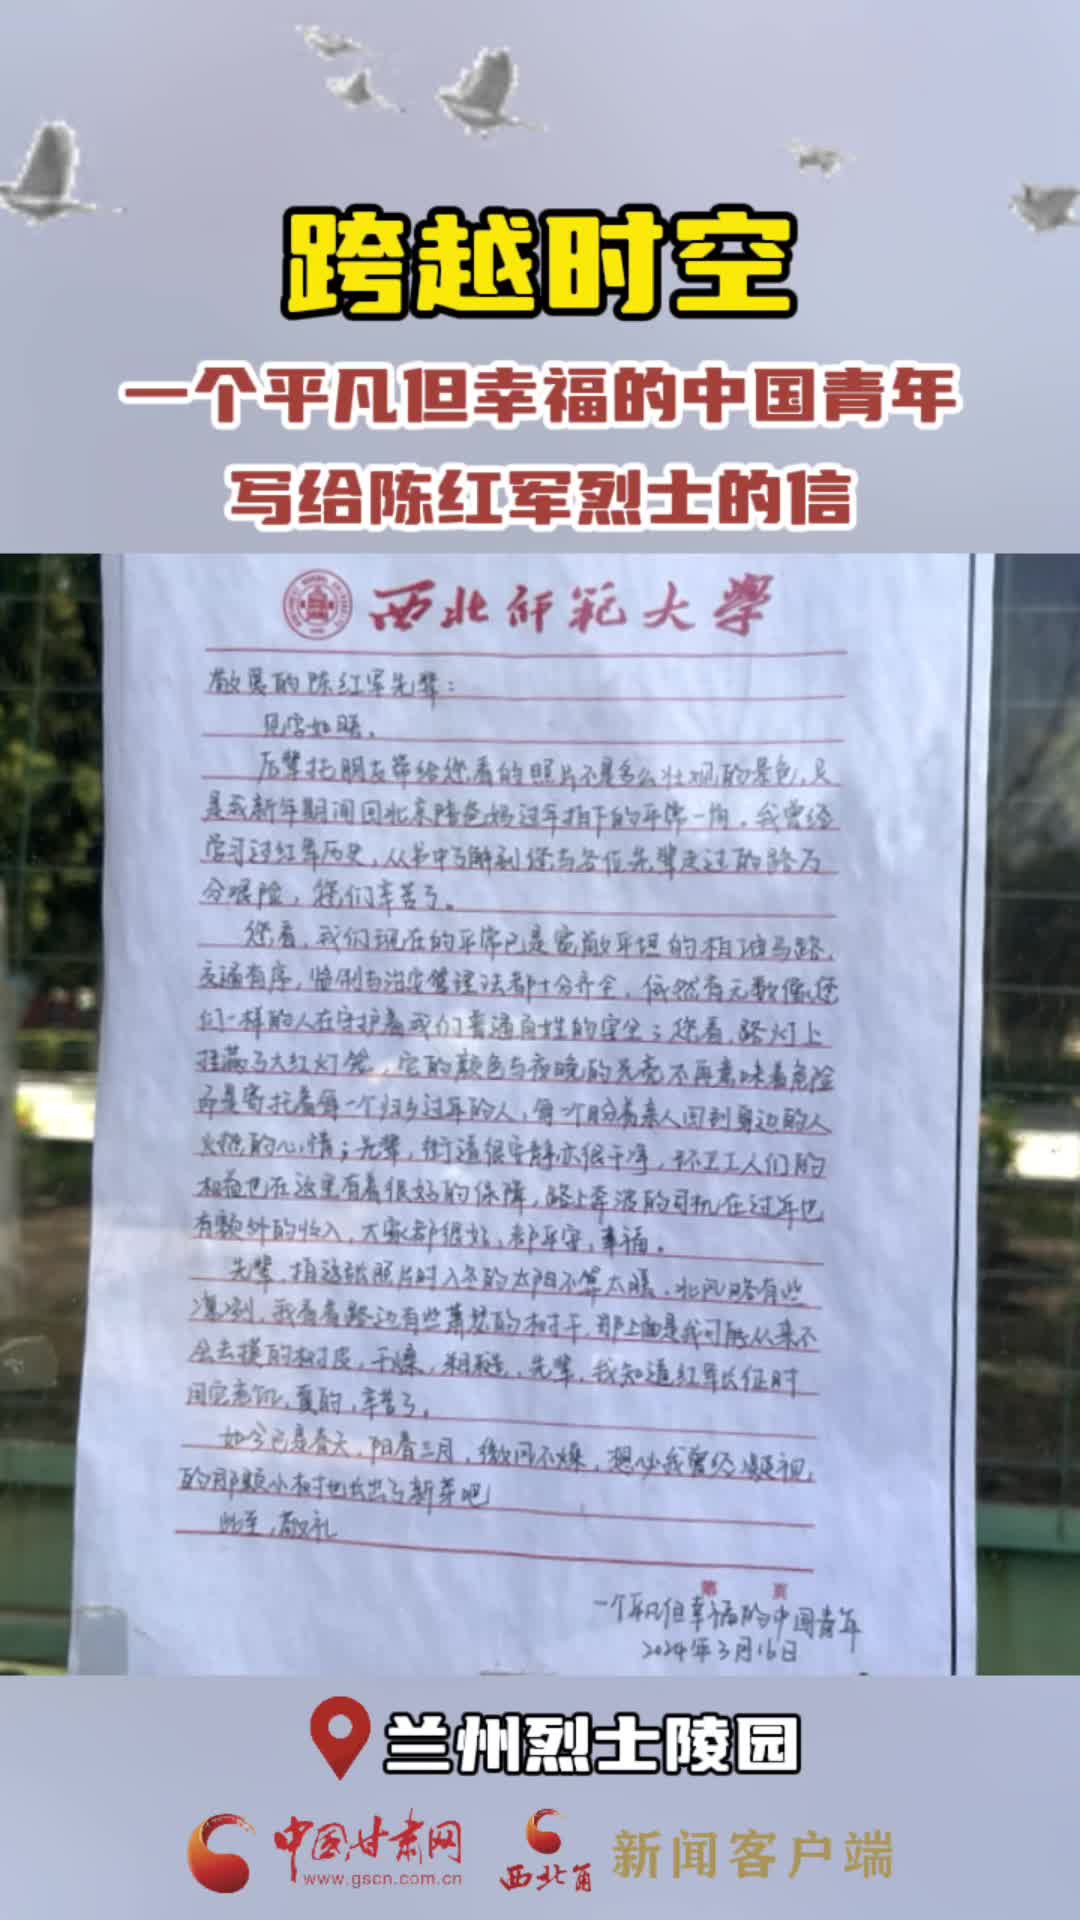 【网络中国节·清明】跨越时空 一个平凡但幸福的中国青年写给陈红军烈士的信